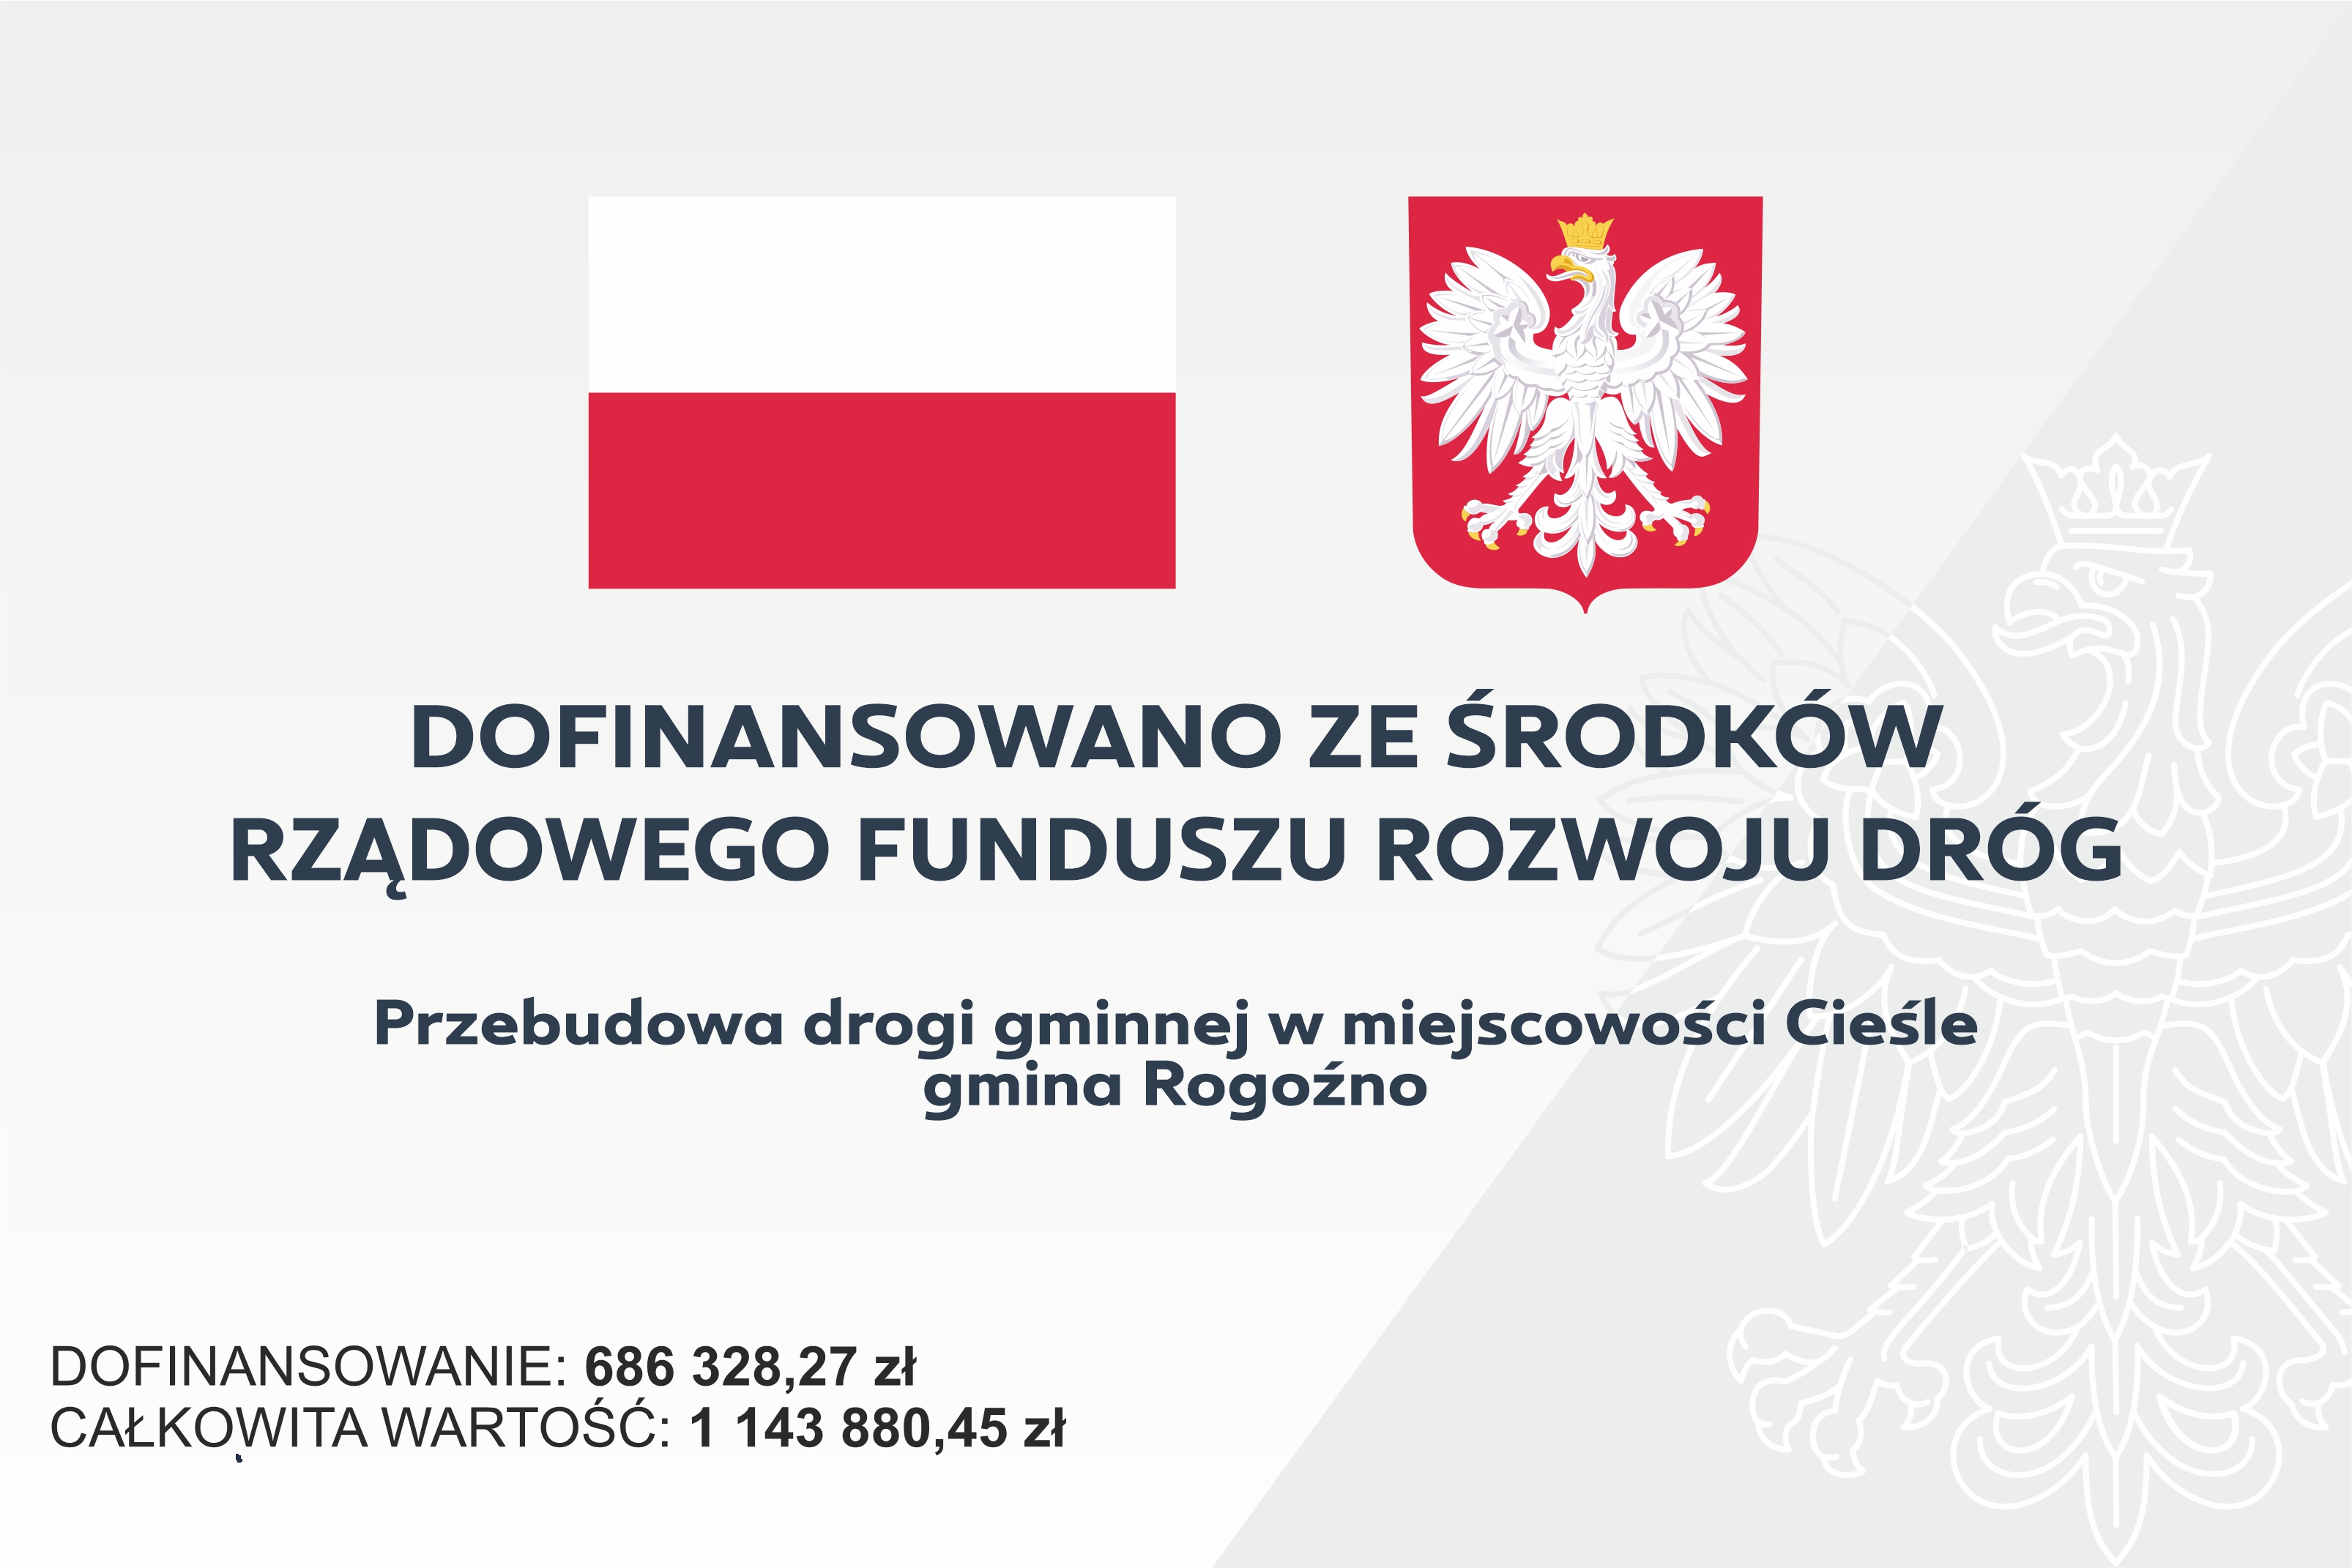 Grafika dotyczy informacji o dofinansowaniu na przebudowę drogi w miejscowości Cieśle w kwocie 686328,27 zł